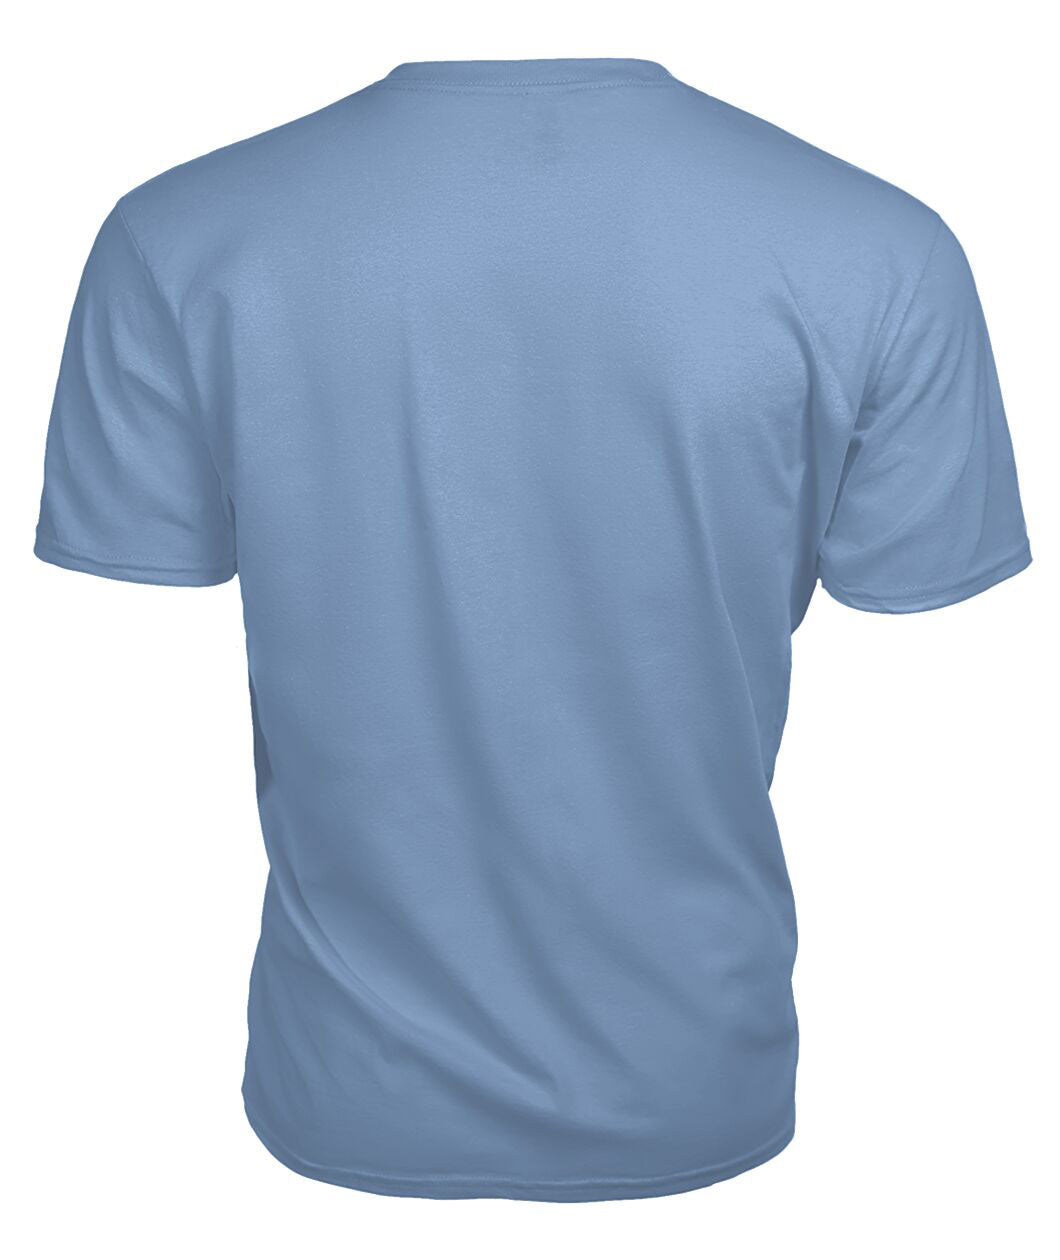 Spens (or Spence) Tartan Crest 2D T-shirt - Blood Runs Through My Veins Style